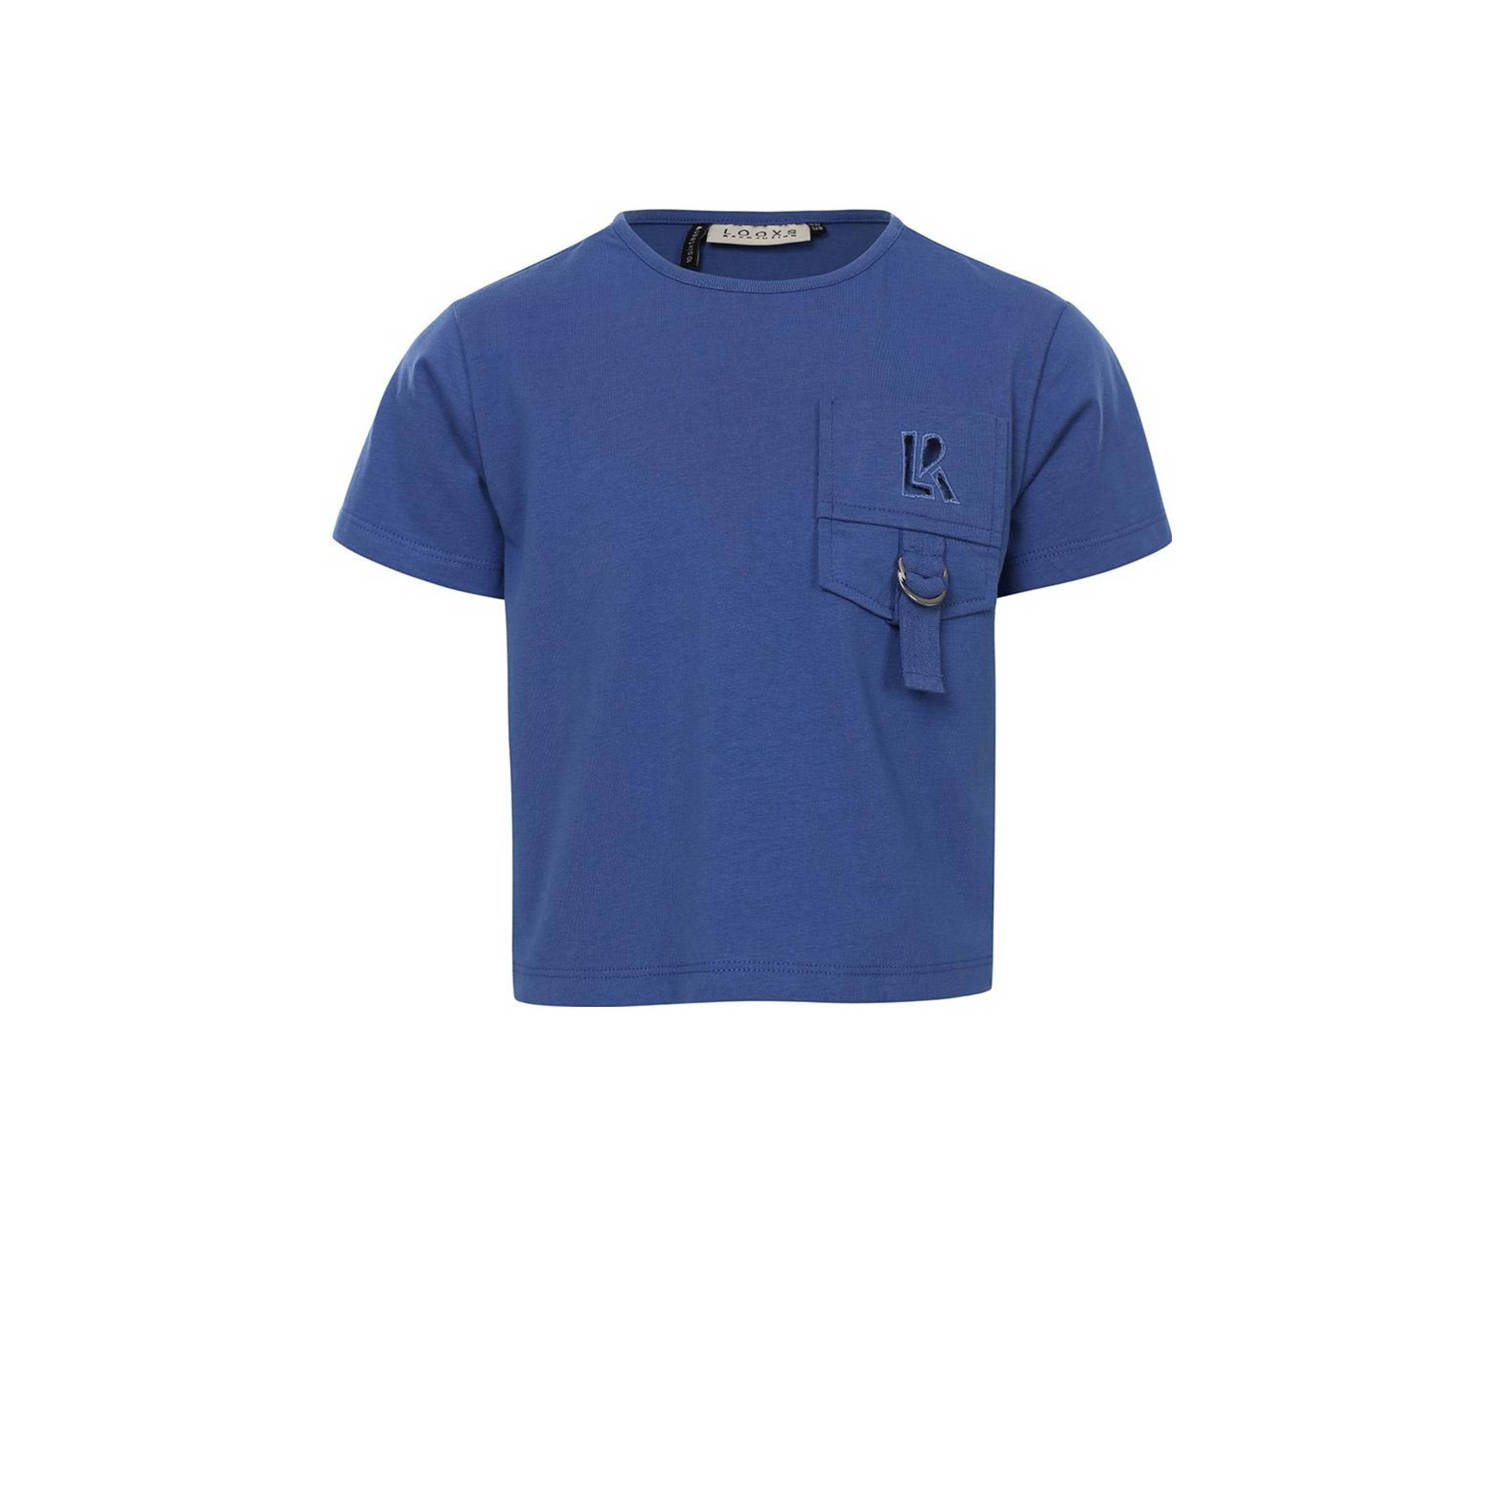 LOOXS 10sixteen T-shirt middenblauw